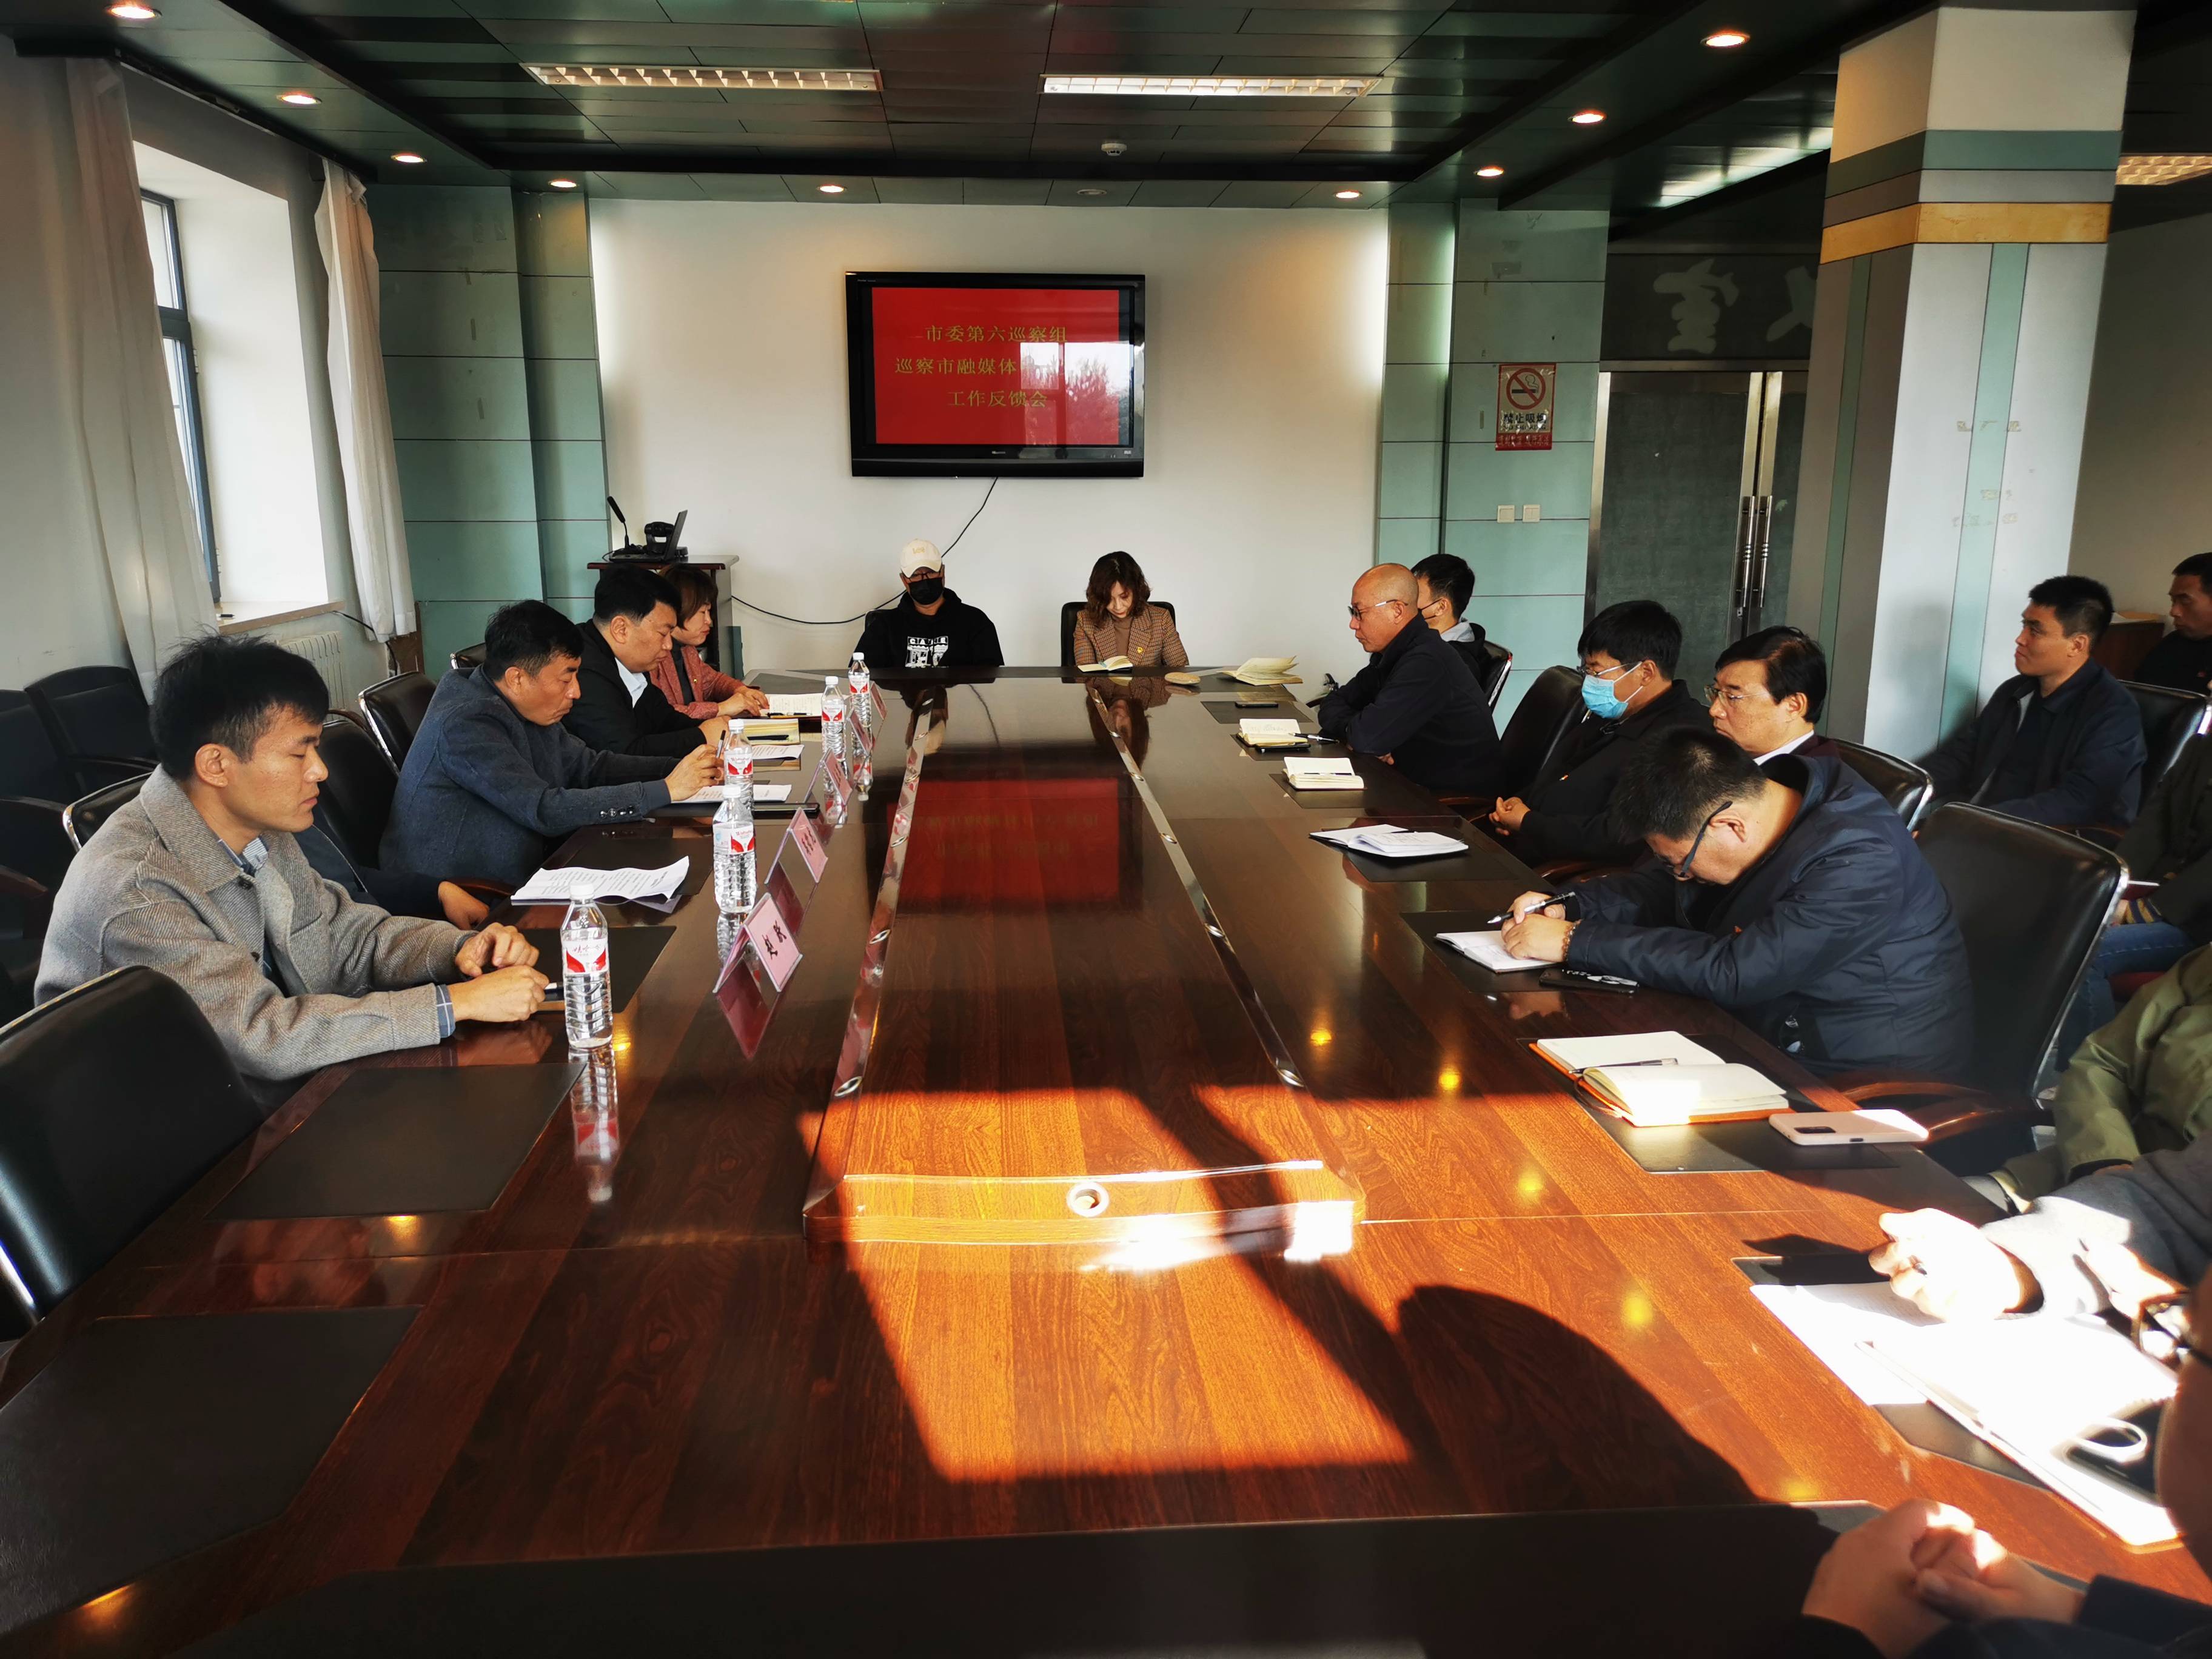 延吉市委第六巡察组向延吉市融媒体中心党组反馈巡察情况